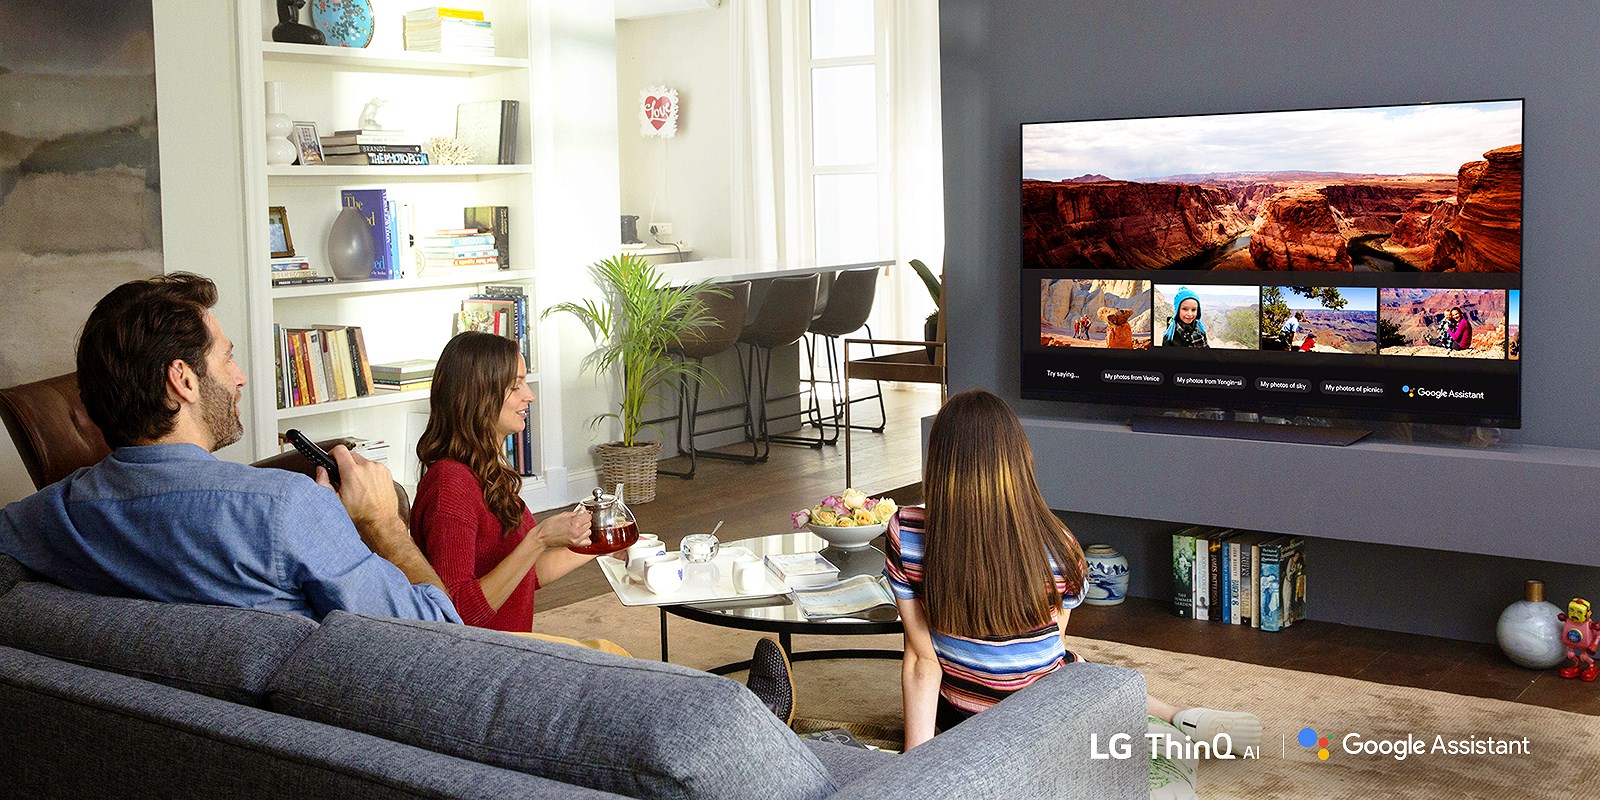 Google Assistant trên tivi giúp người dùng tần hưởng giải trí cùng gia đình sau ngày làm việc